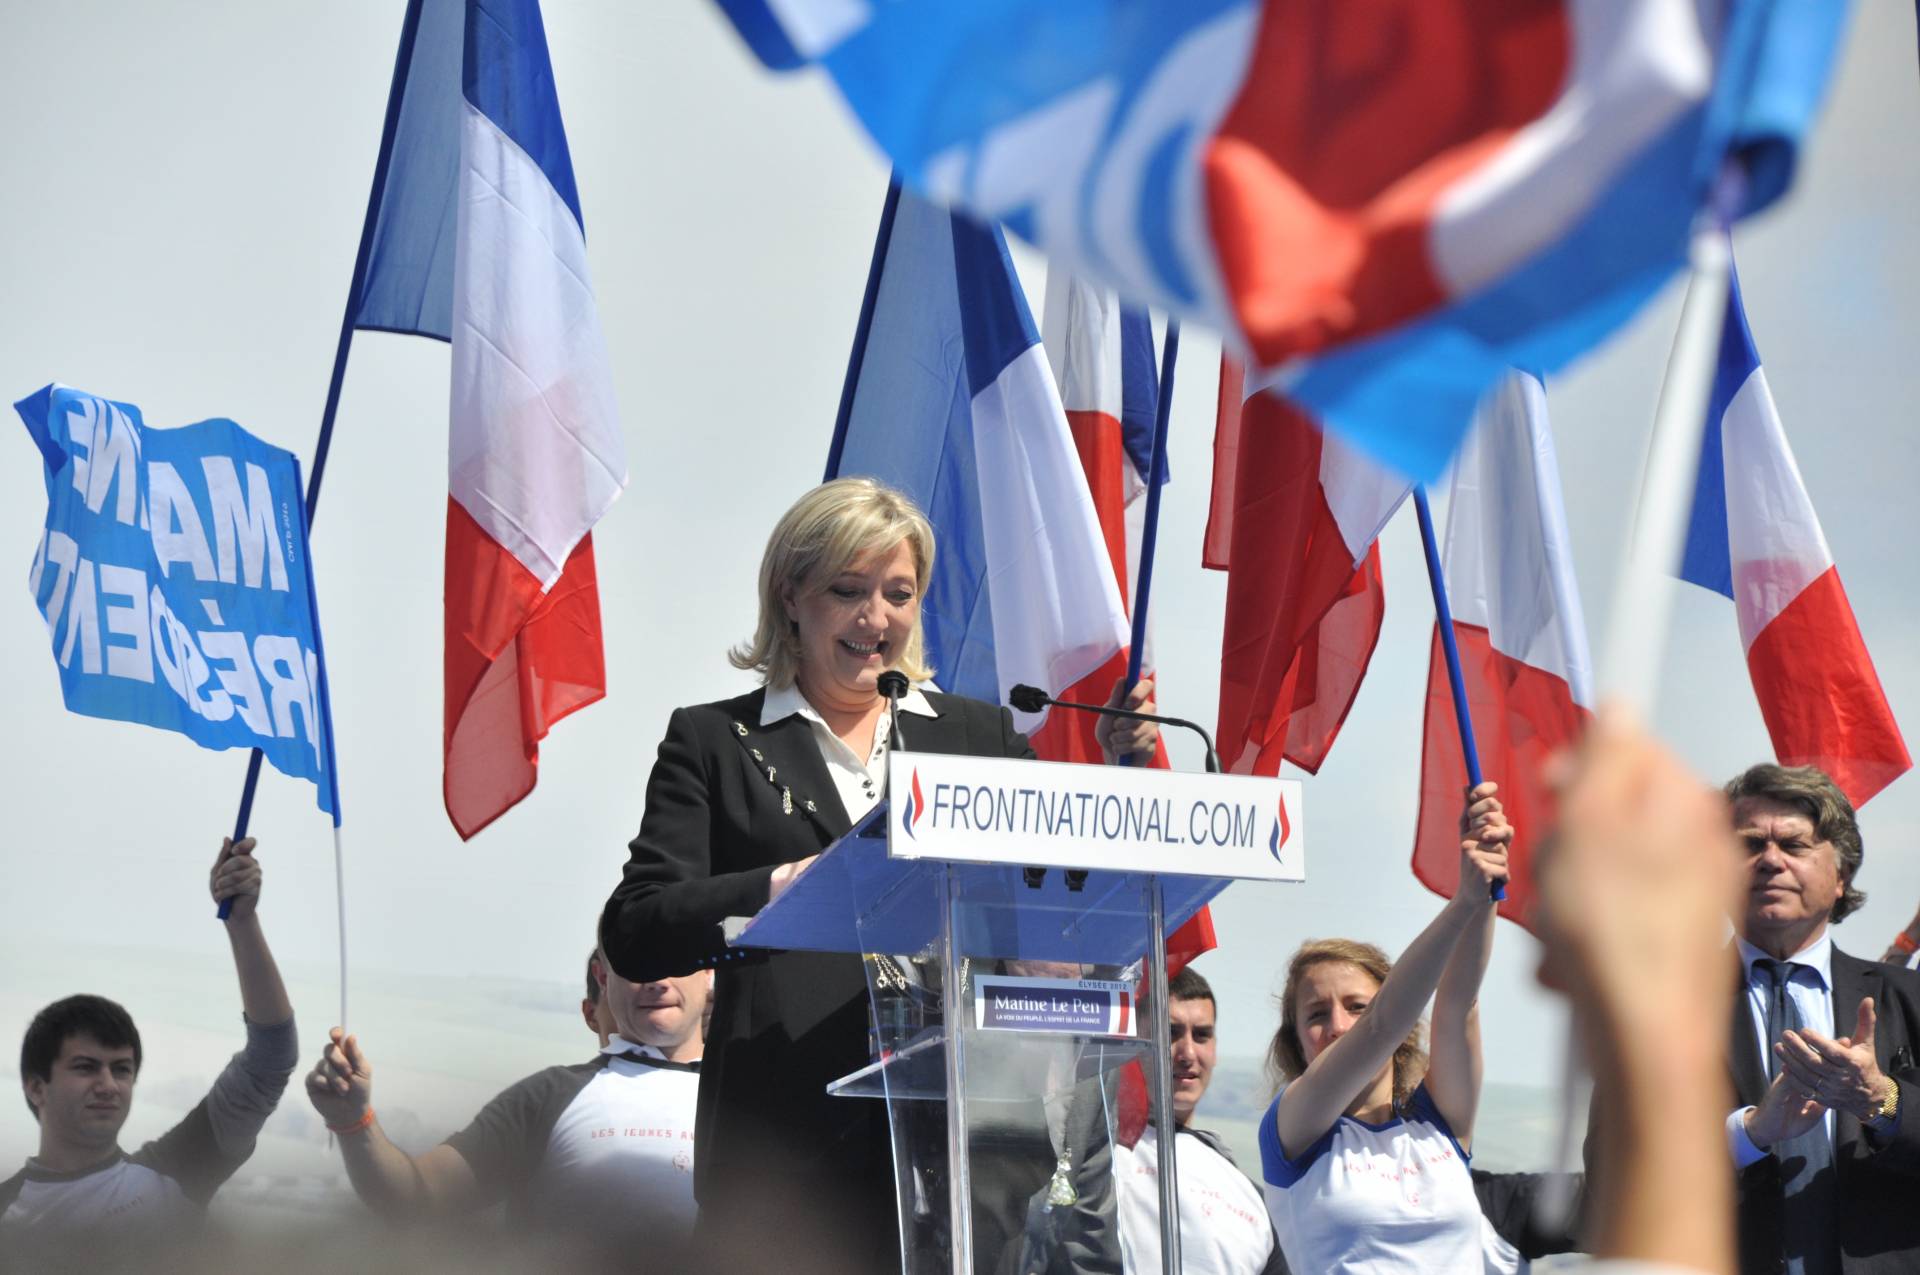 Marine Le Pen, líder del Frente Nacional francés.